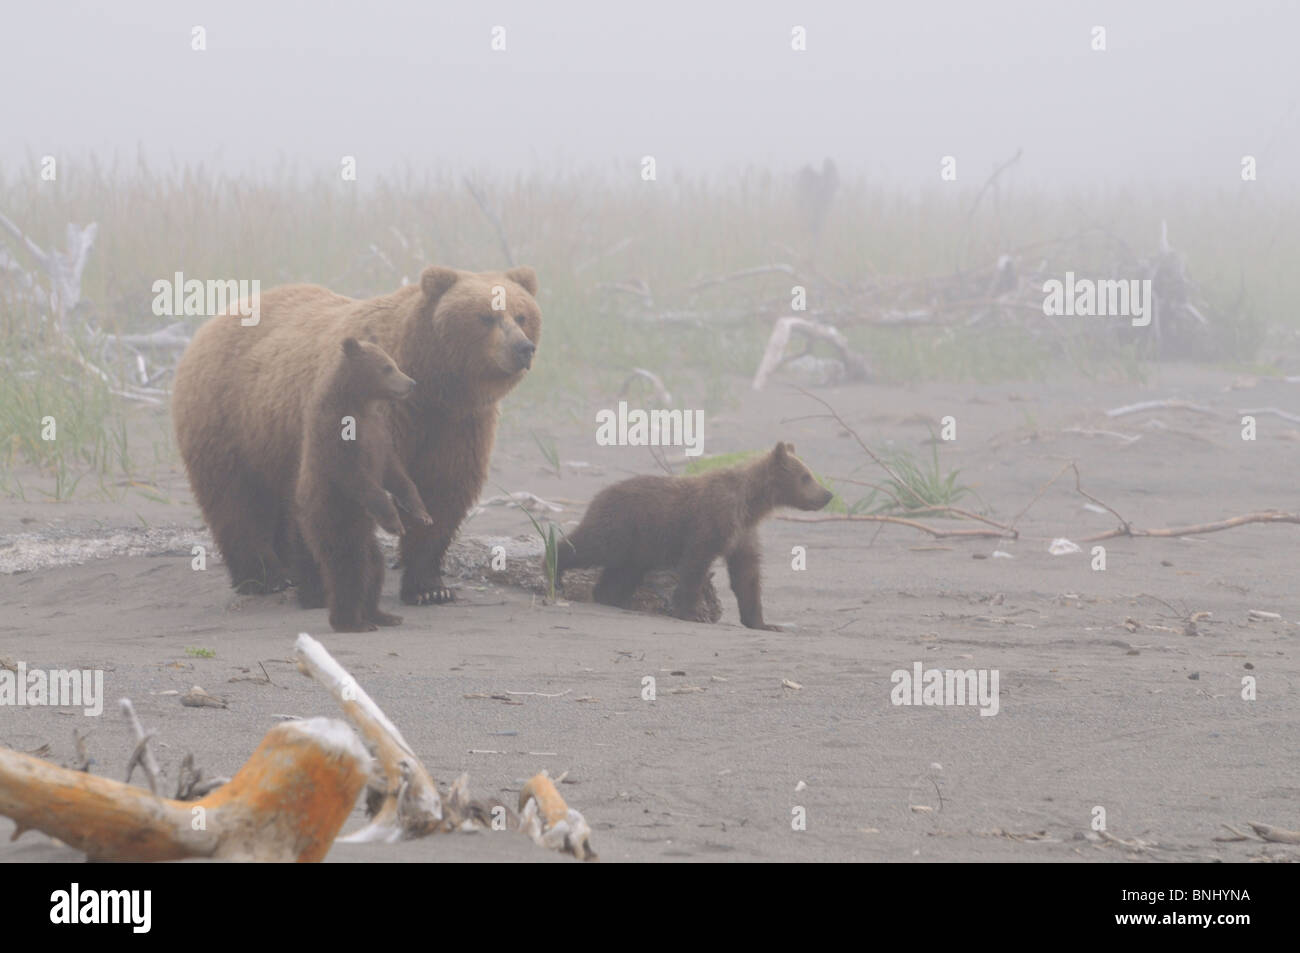 Stock photo d'un ours brun côtières de l'Alaska de truies et deux oursons debout sur la plage, dans le brouillard, Lake Clark National Park. Banque D'Images